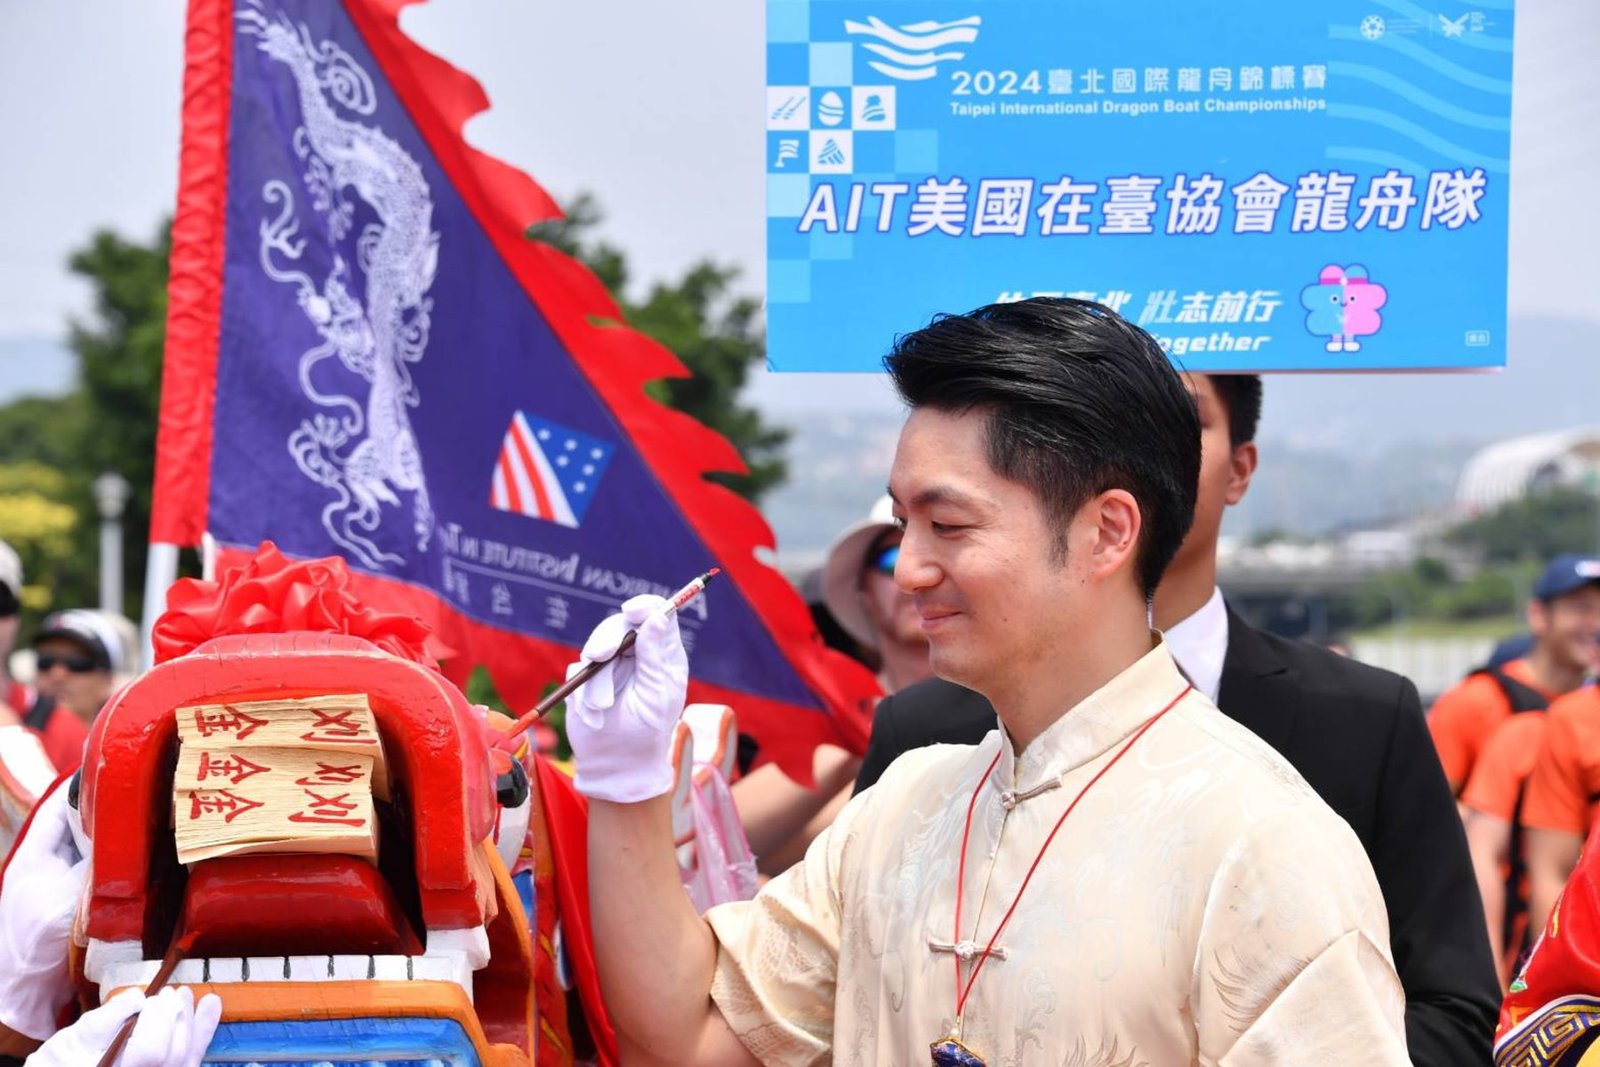 台北國際龍舟錦標賽 212隊、5100名隊職員參加